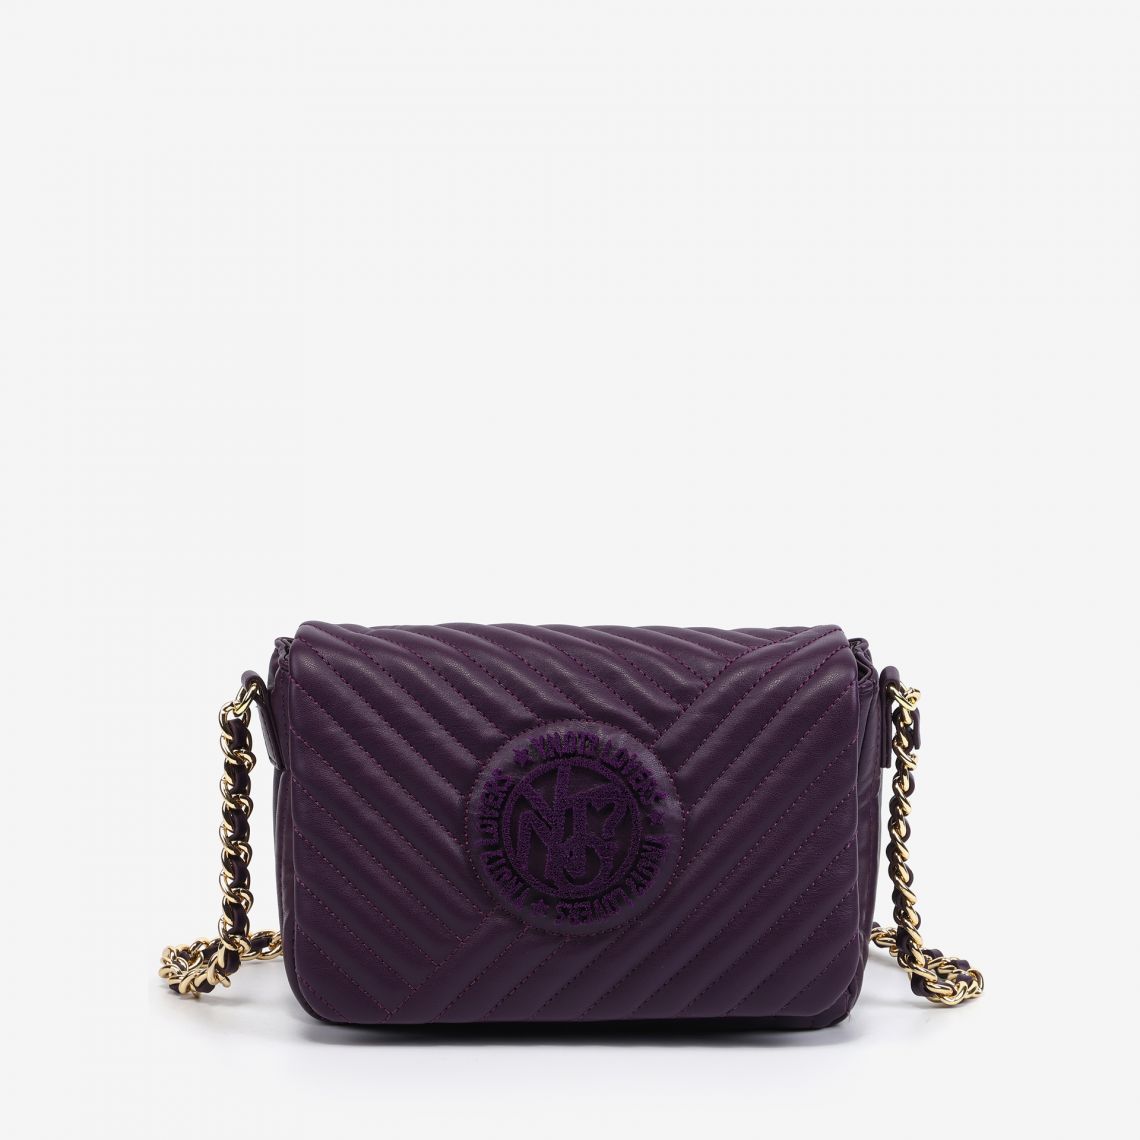 (image for) Pattina Purple borse da donna